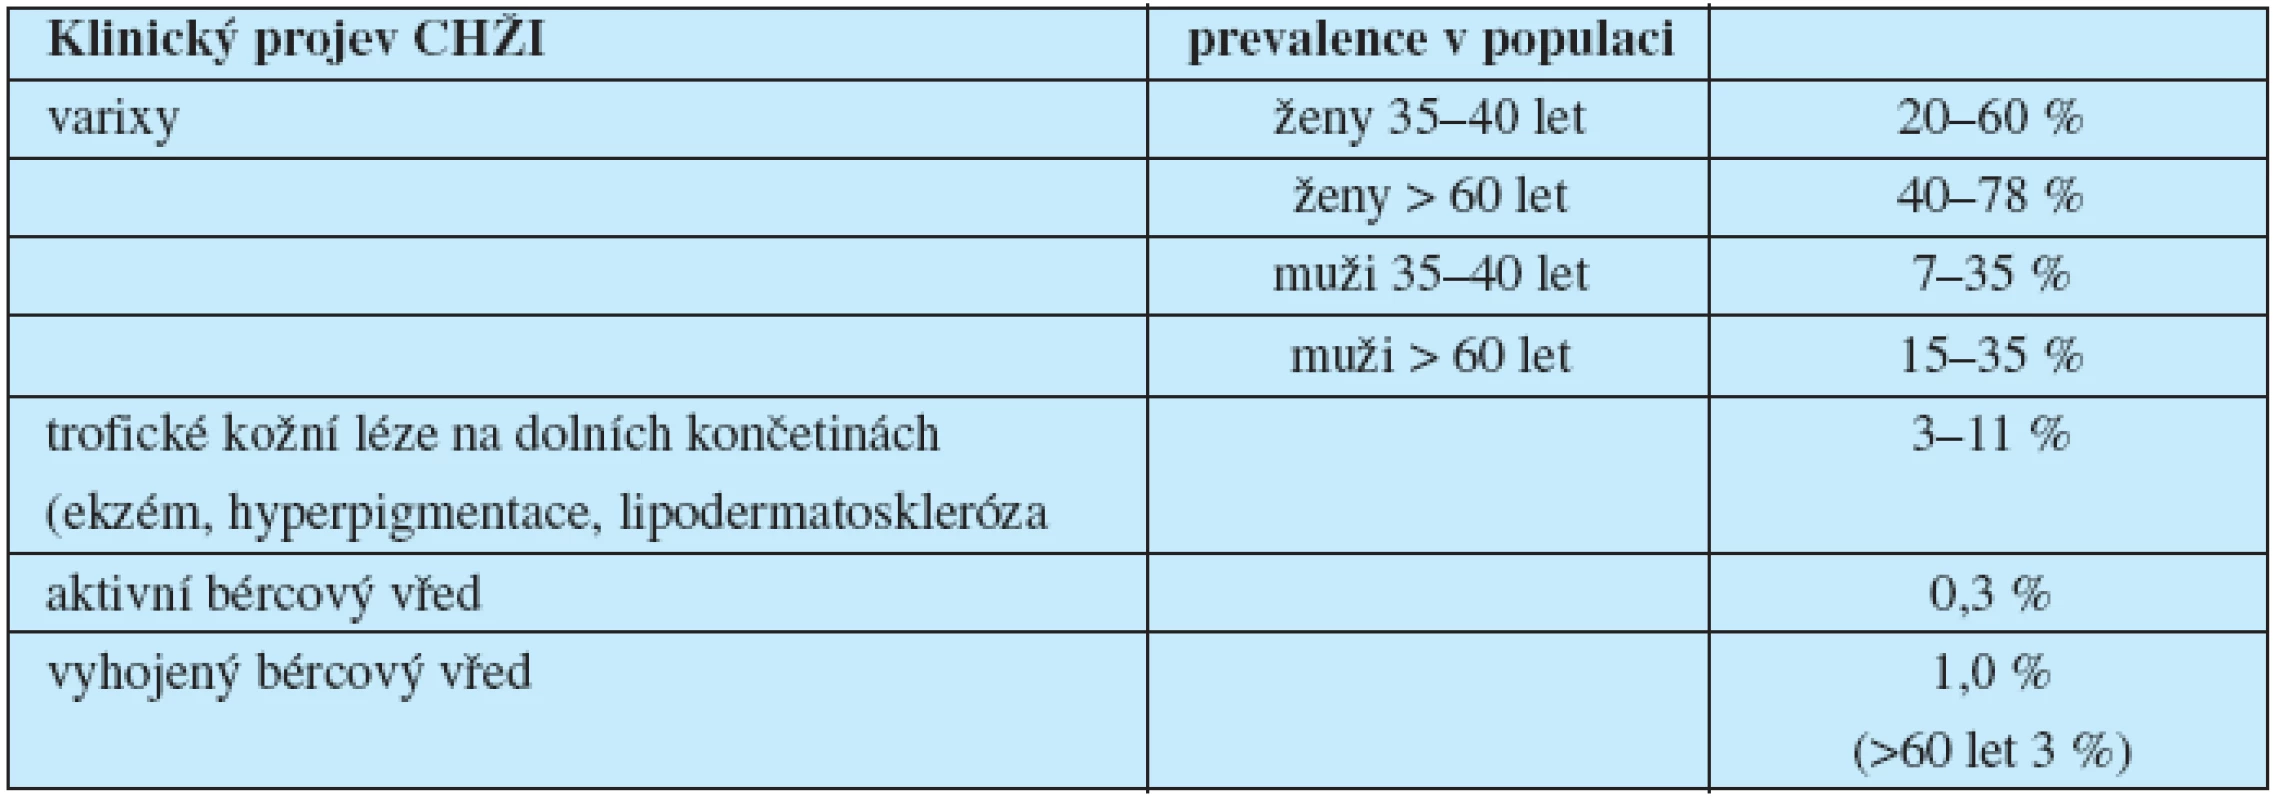 Prevalence klinických projevů CHŽI v západní populaci 